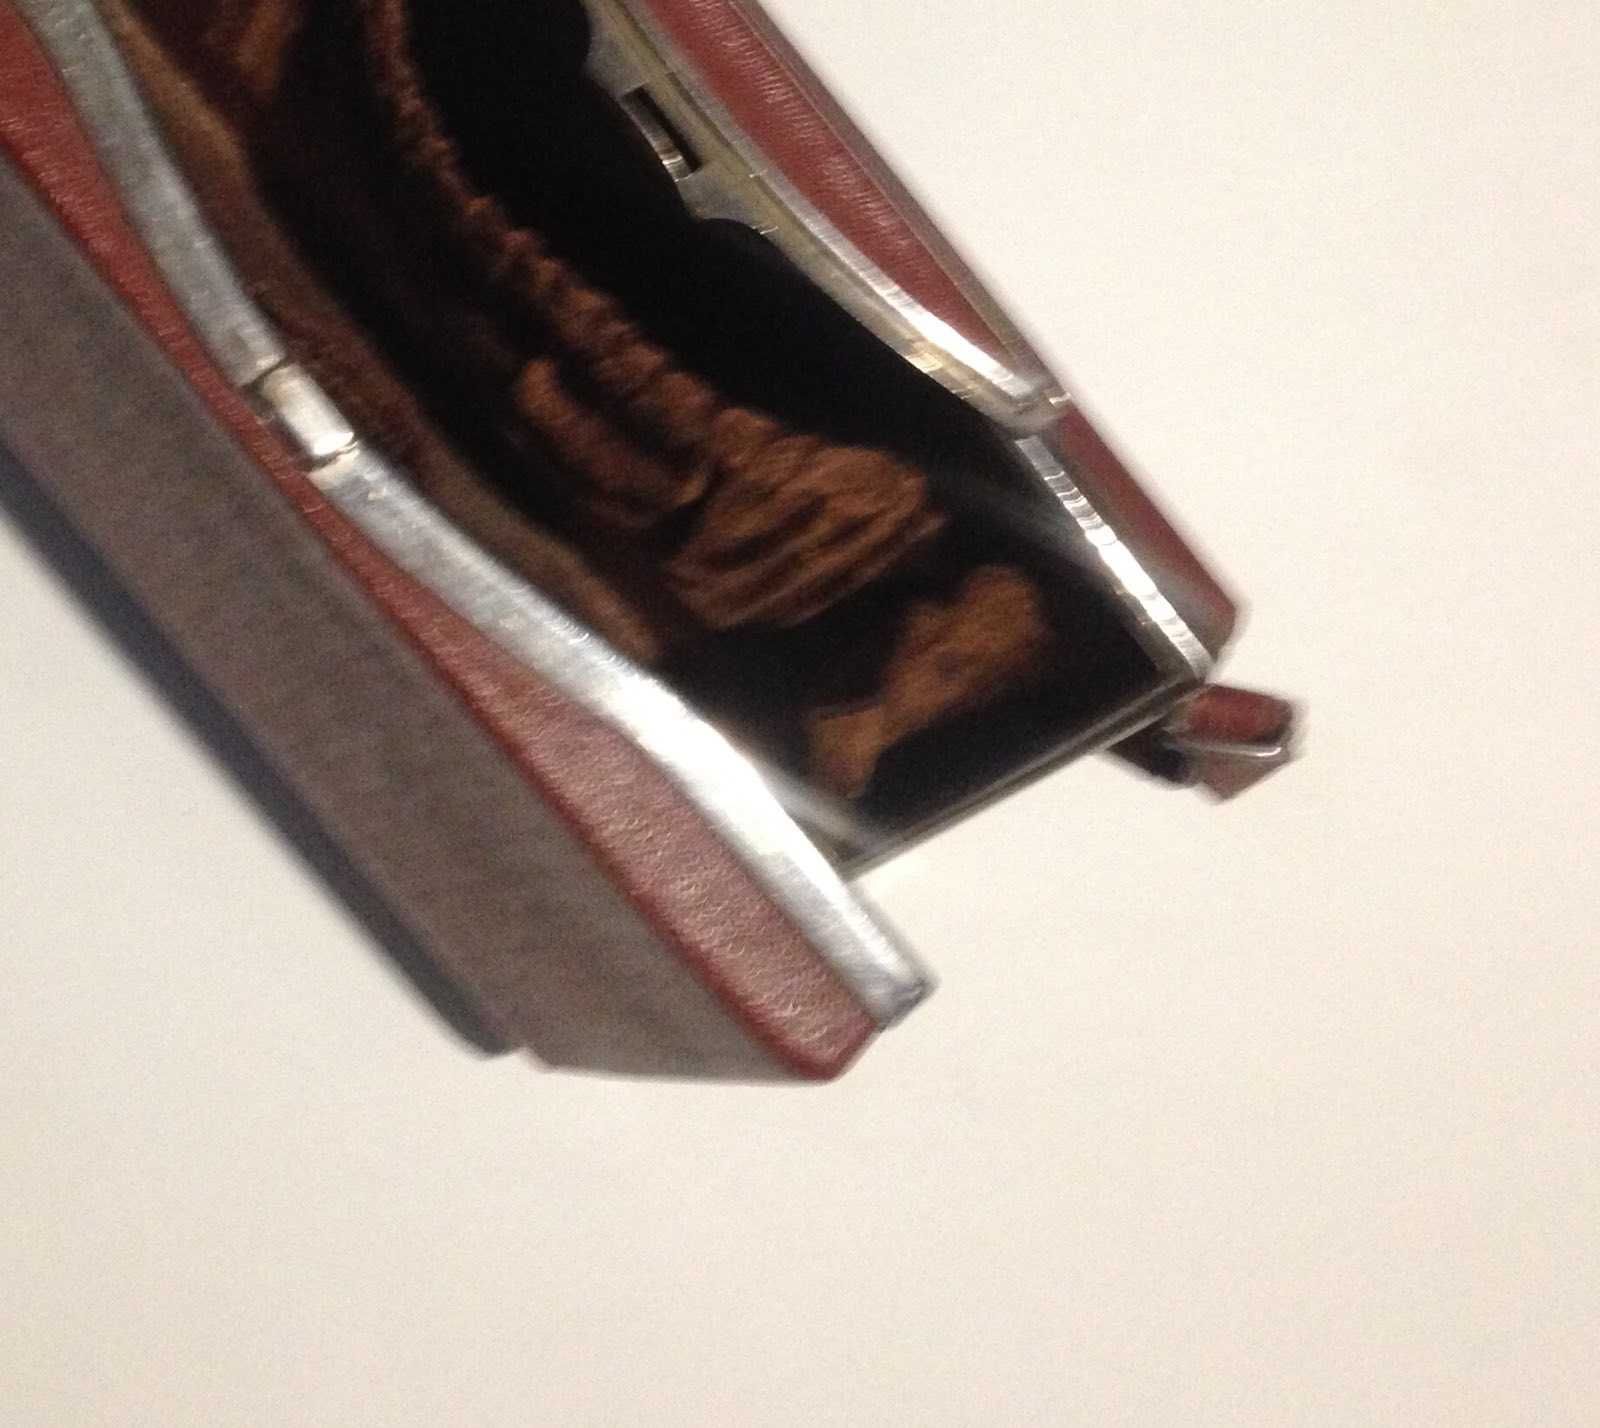 винтажная кожаная сумка,1930,старинная сумочка,клатч,саквояж